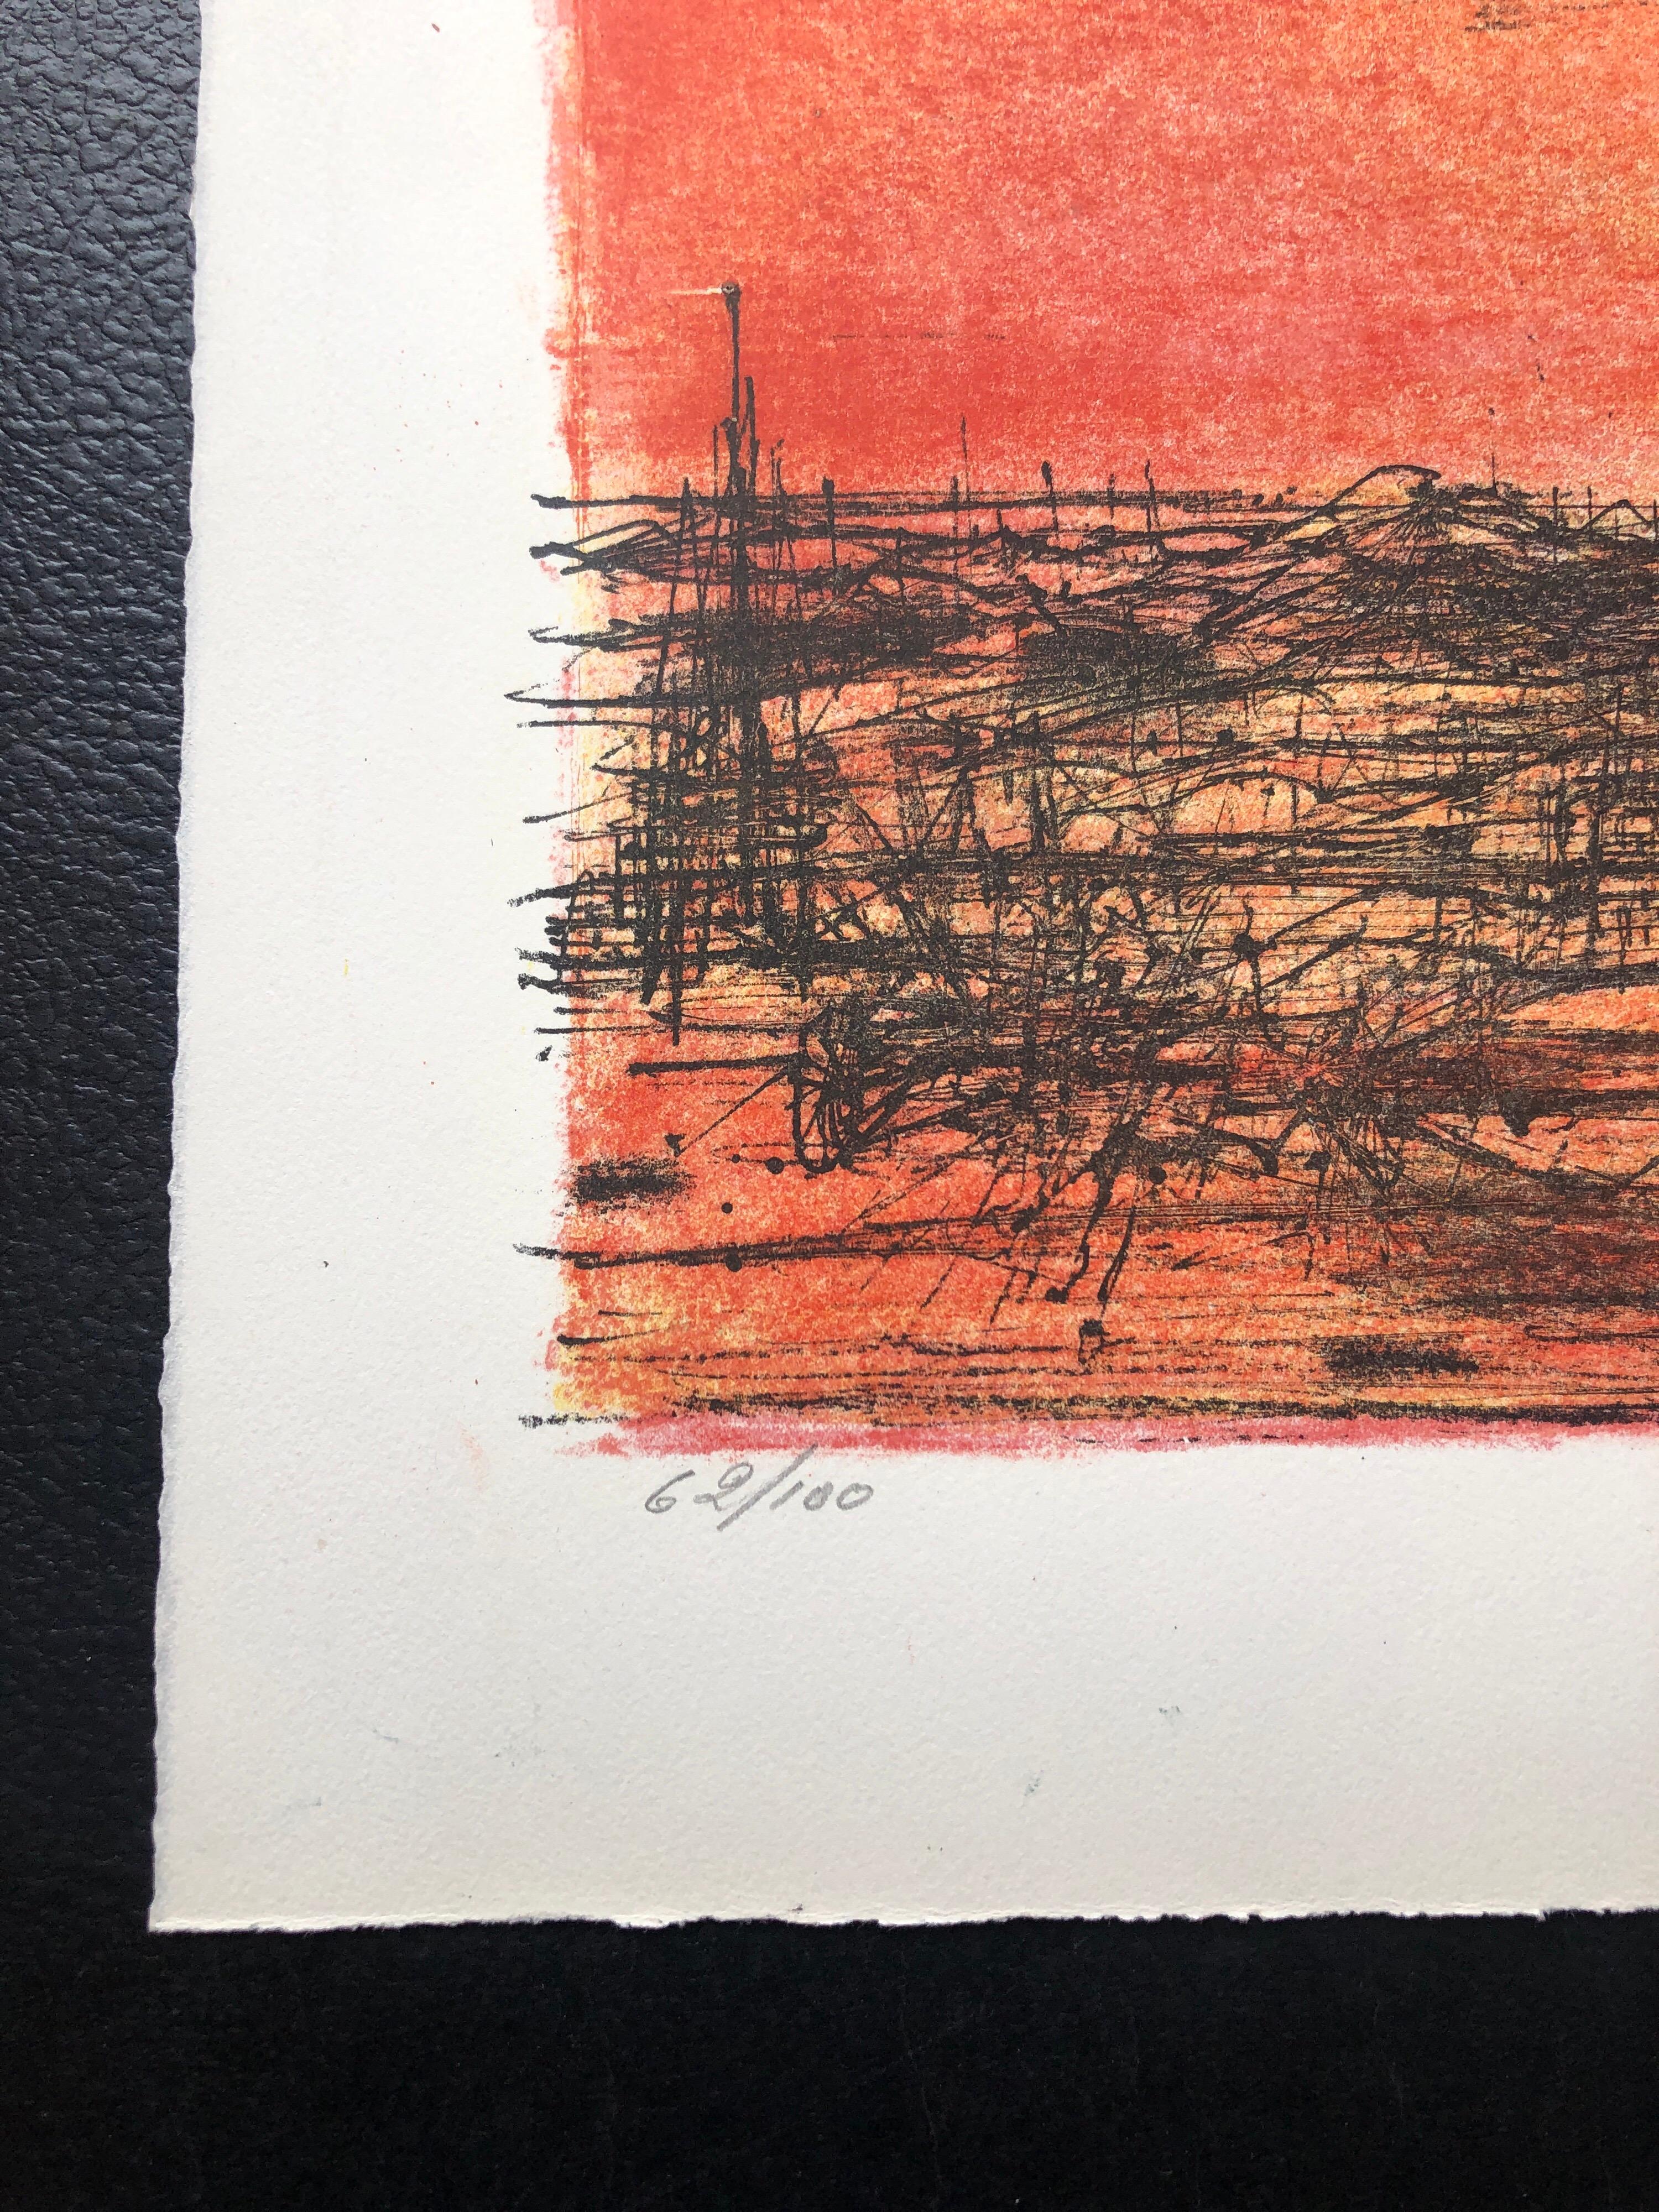 Lithographie moderniste française Carzou couleur volcan orange flamboyant, 1968 - Print de Jean Carzou